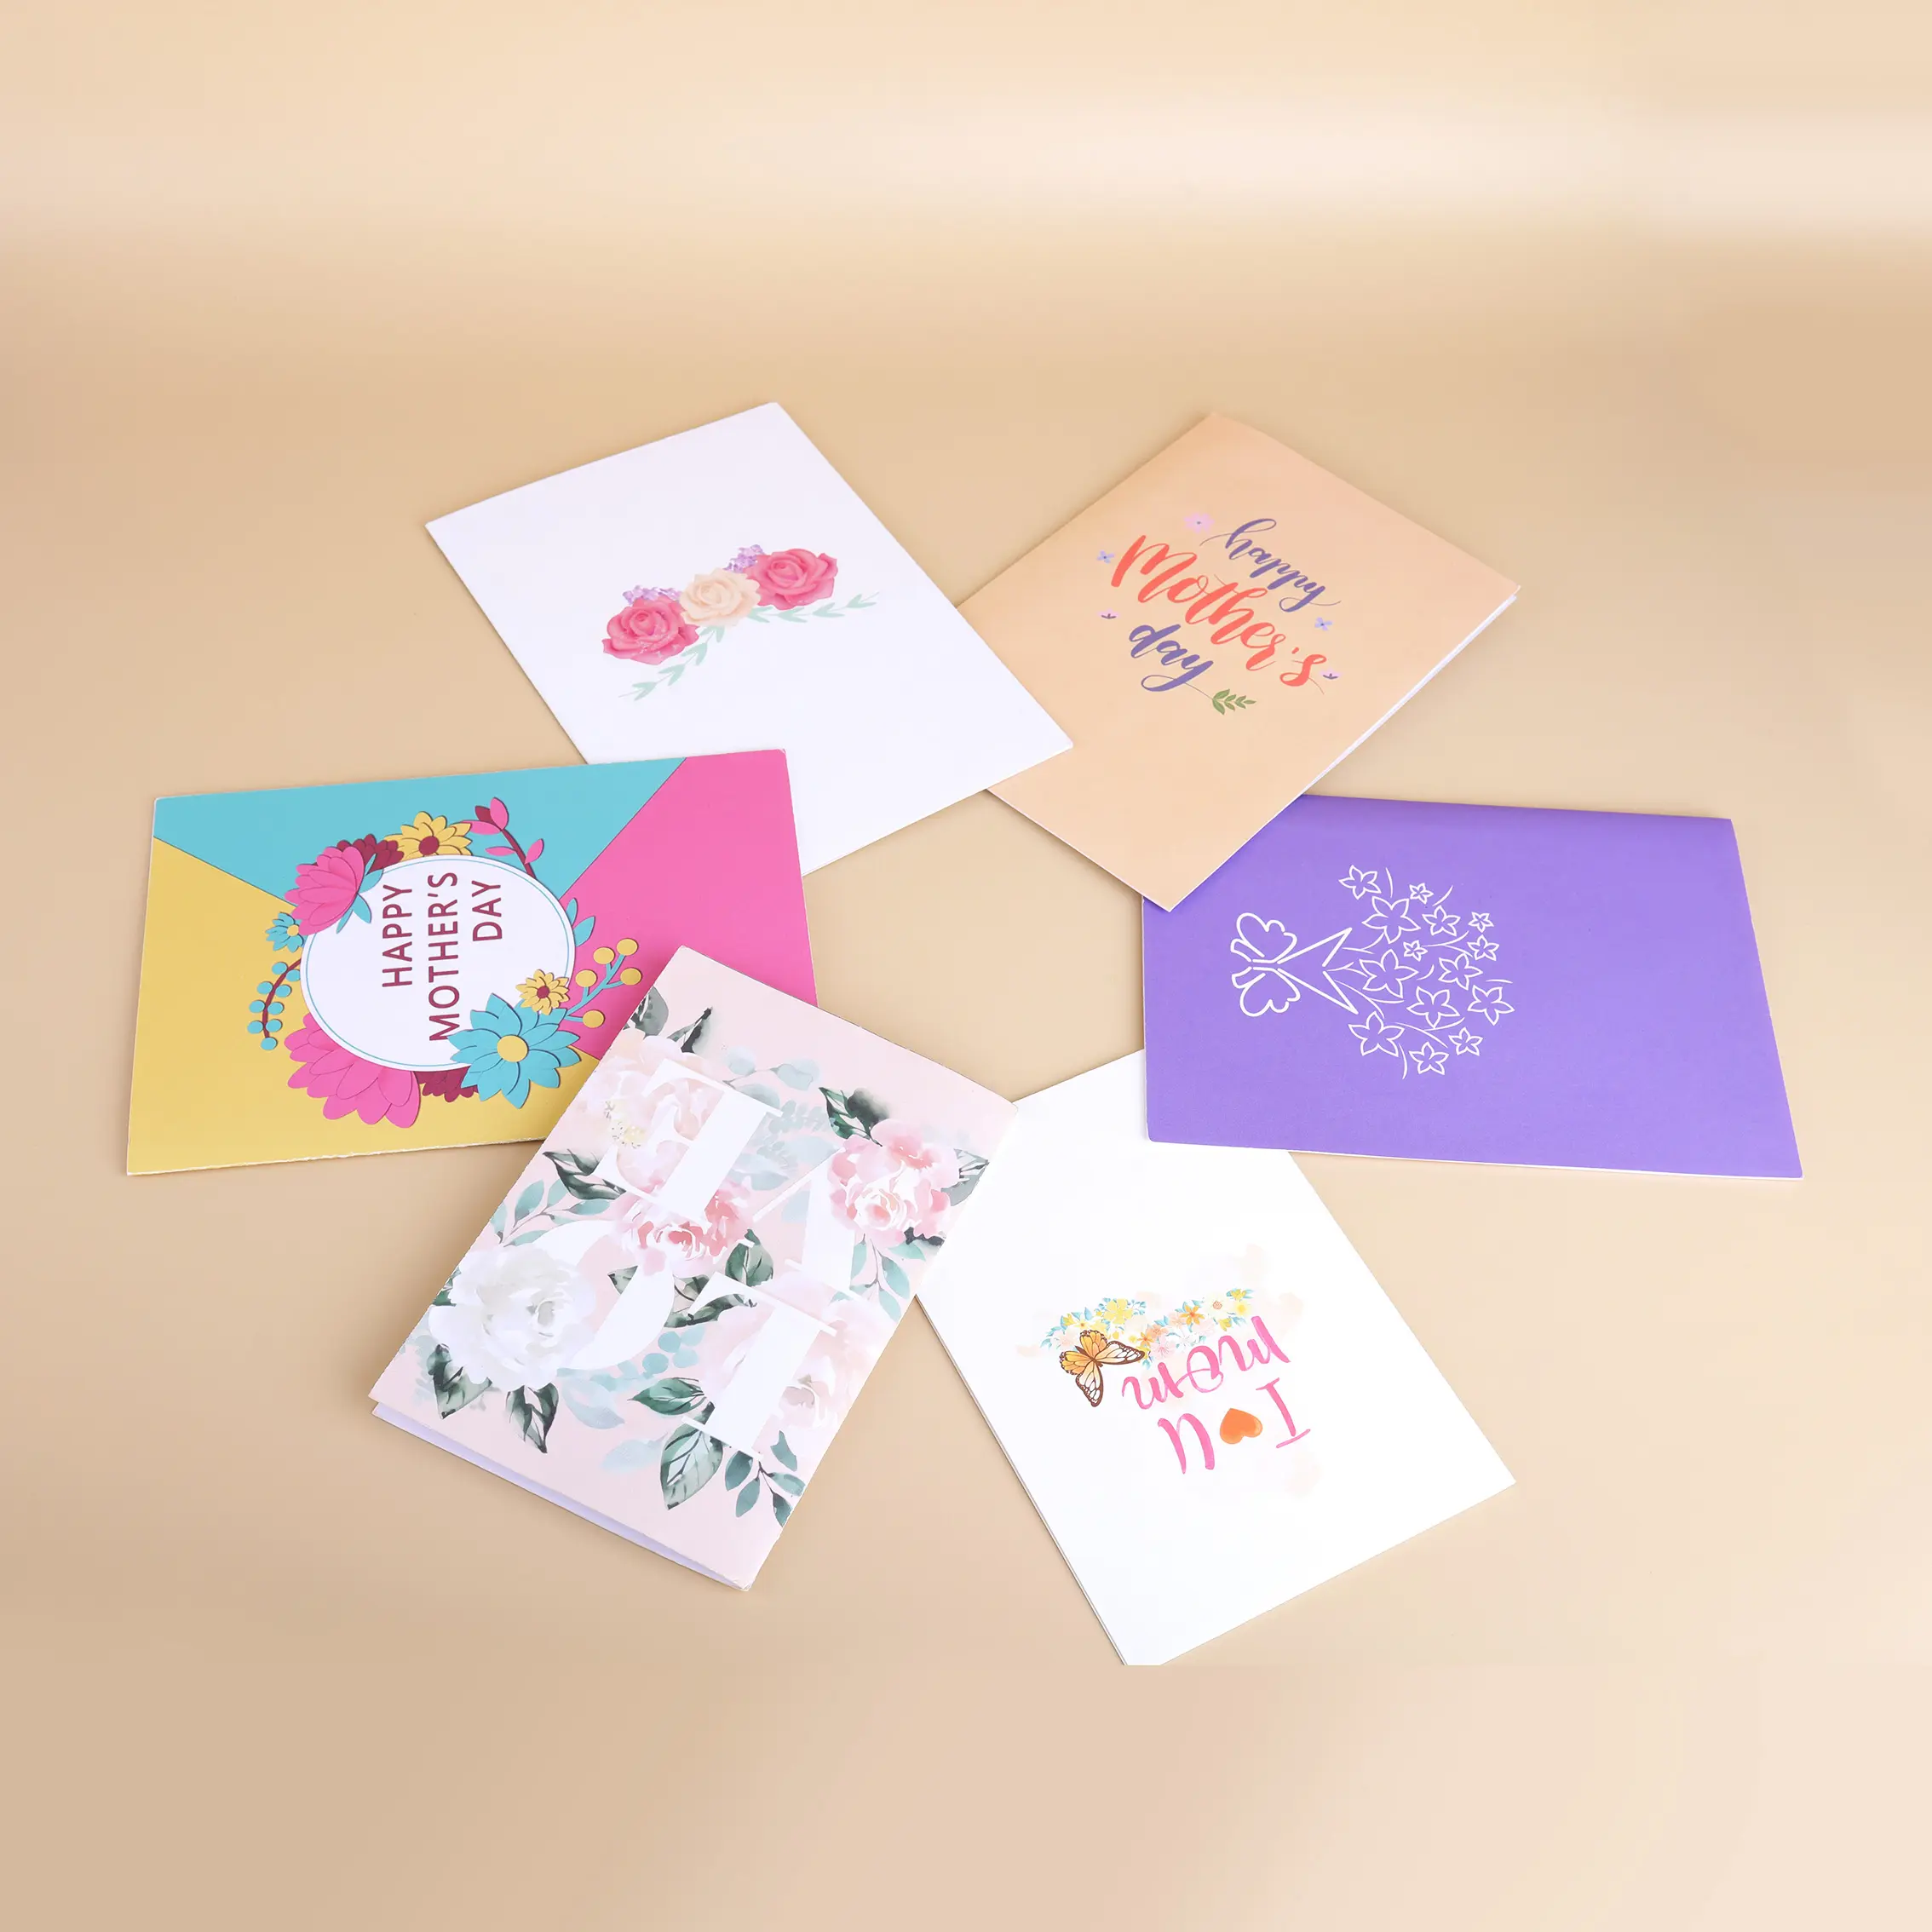 Winpsheng usine personnalisée à la main 3D Pop-Up musique lumière carte de voeux carte de remerciement cadeau de fête des mères enveloppes en papier imprimées